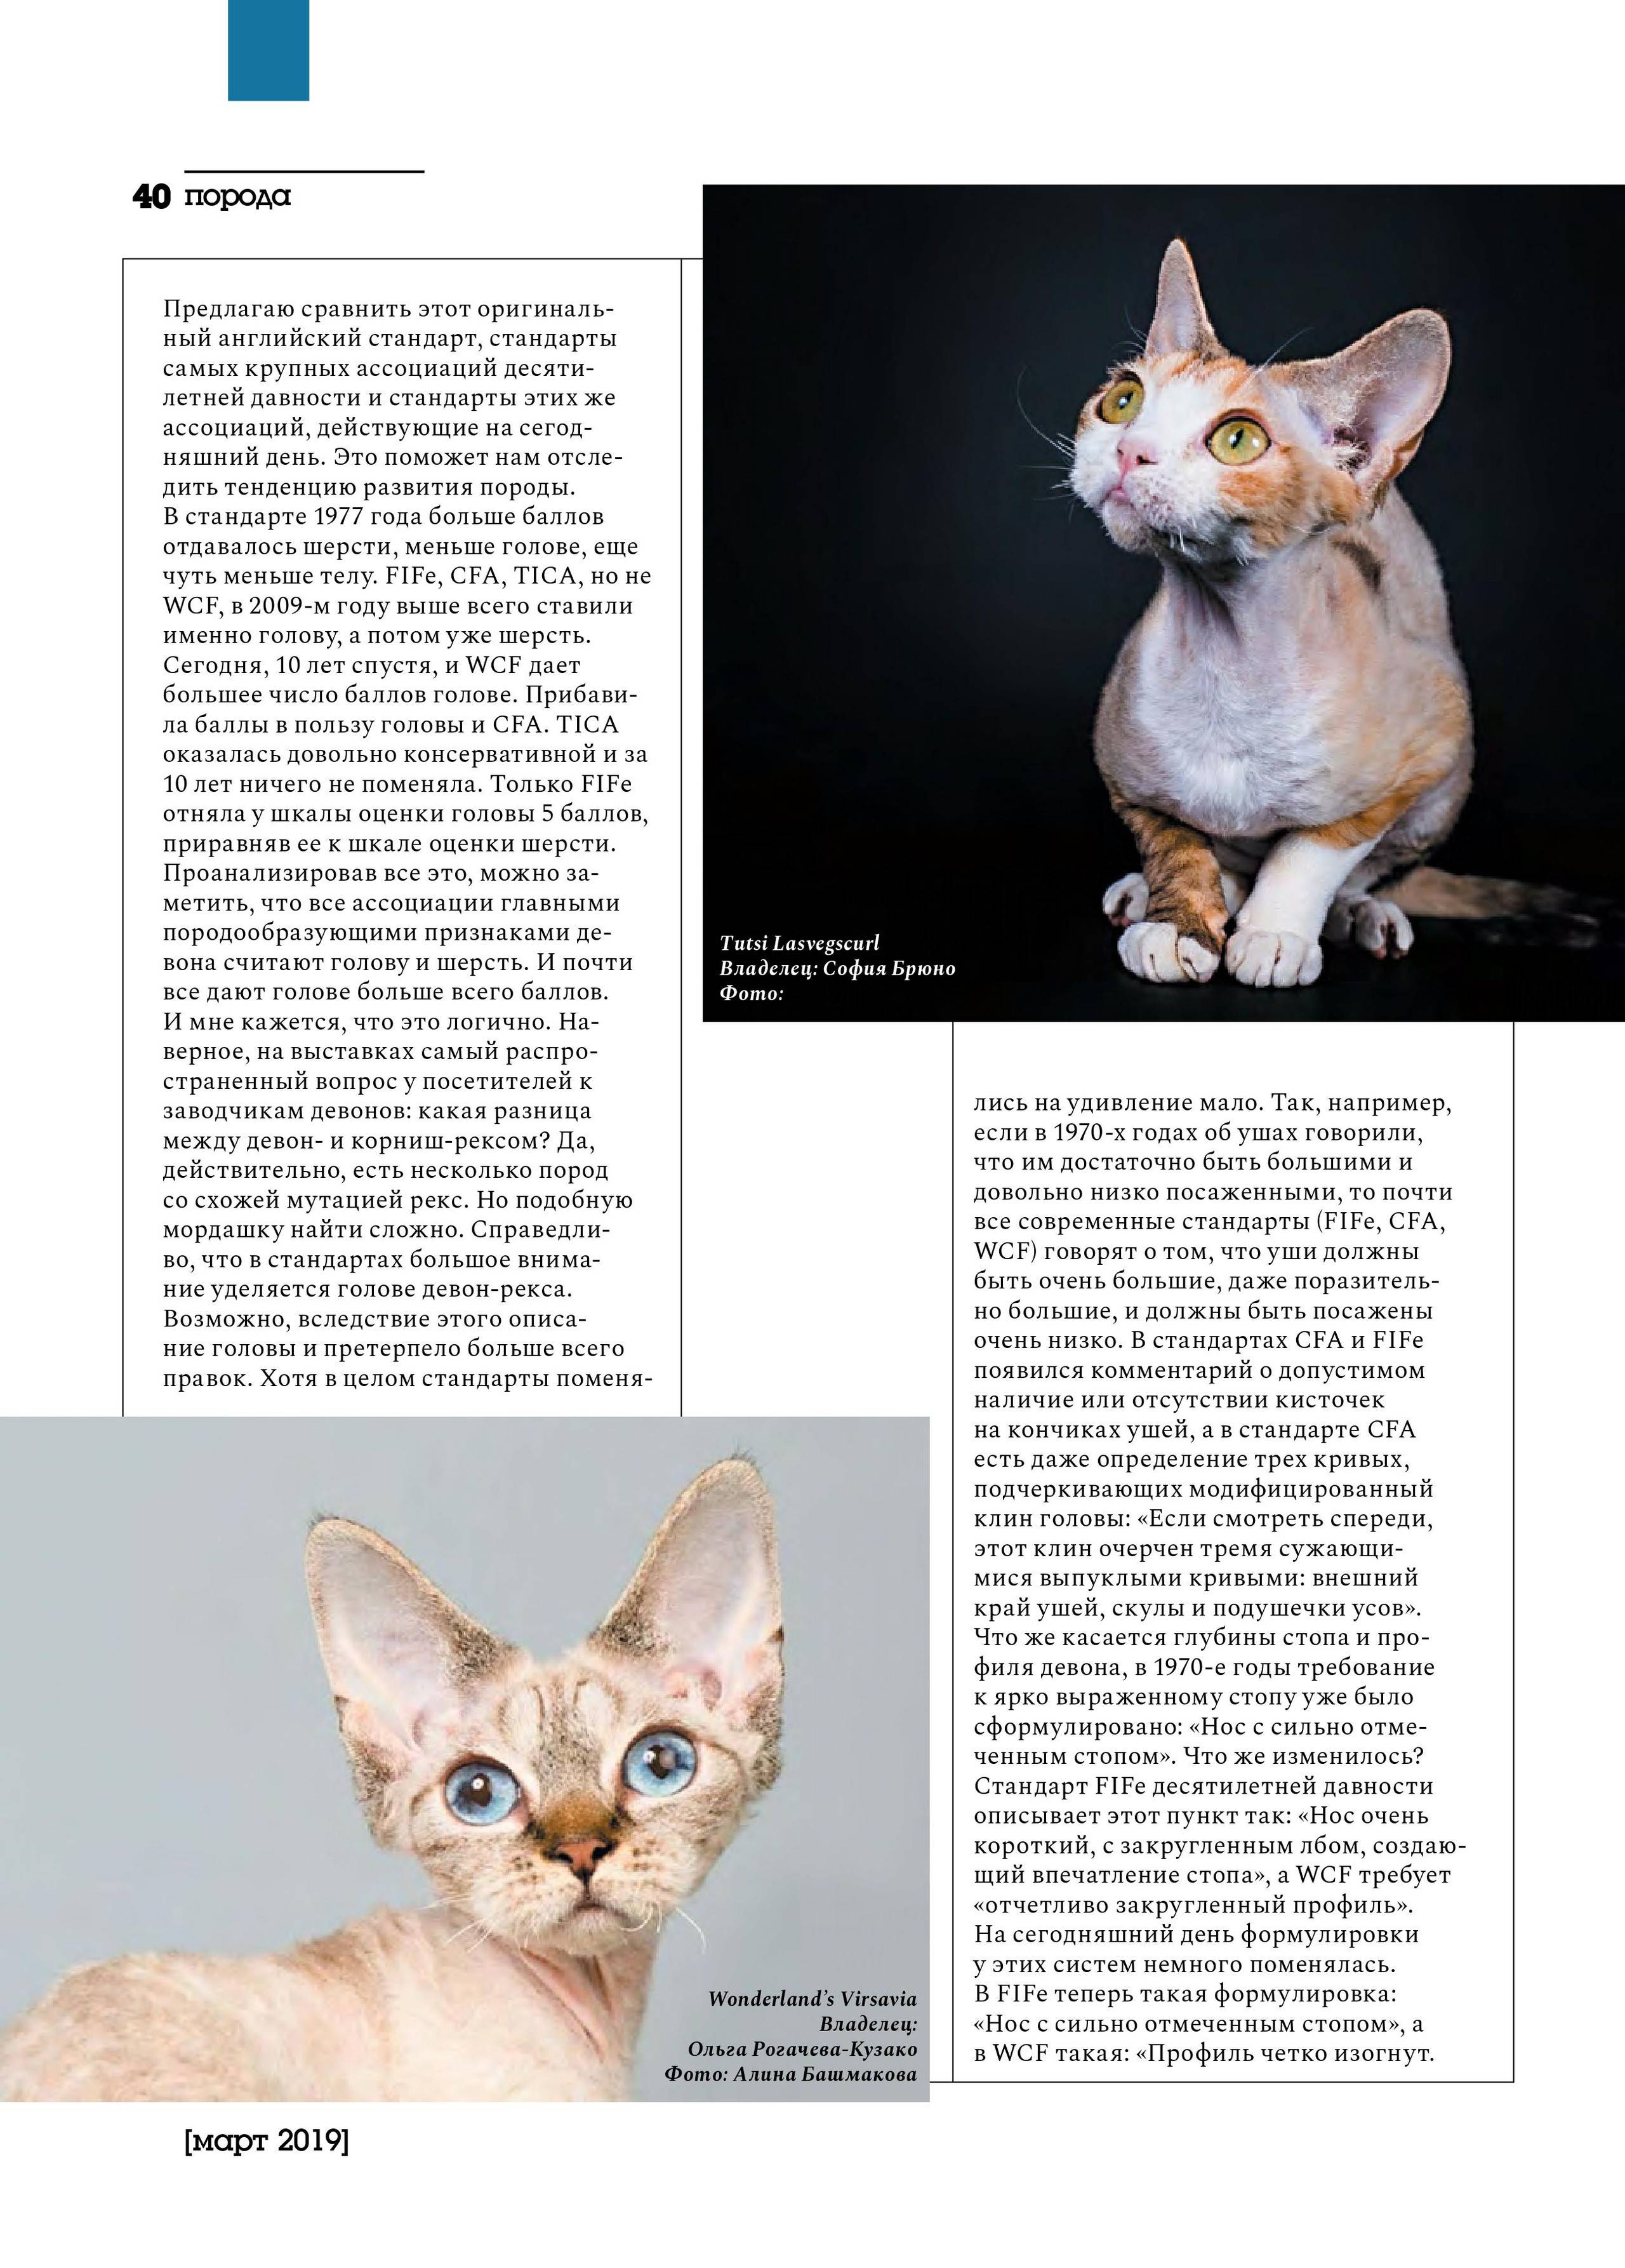 Девон-рекс (25 фото): описание породы, цена котенка, советы по содержанию, питомники